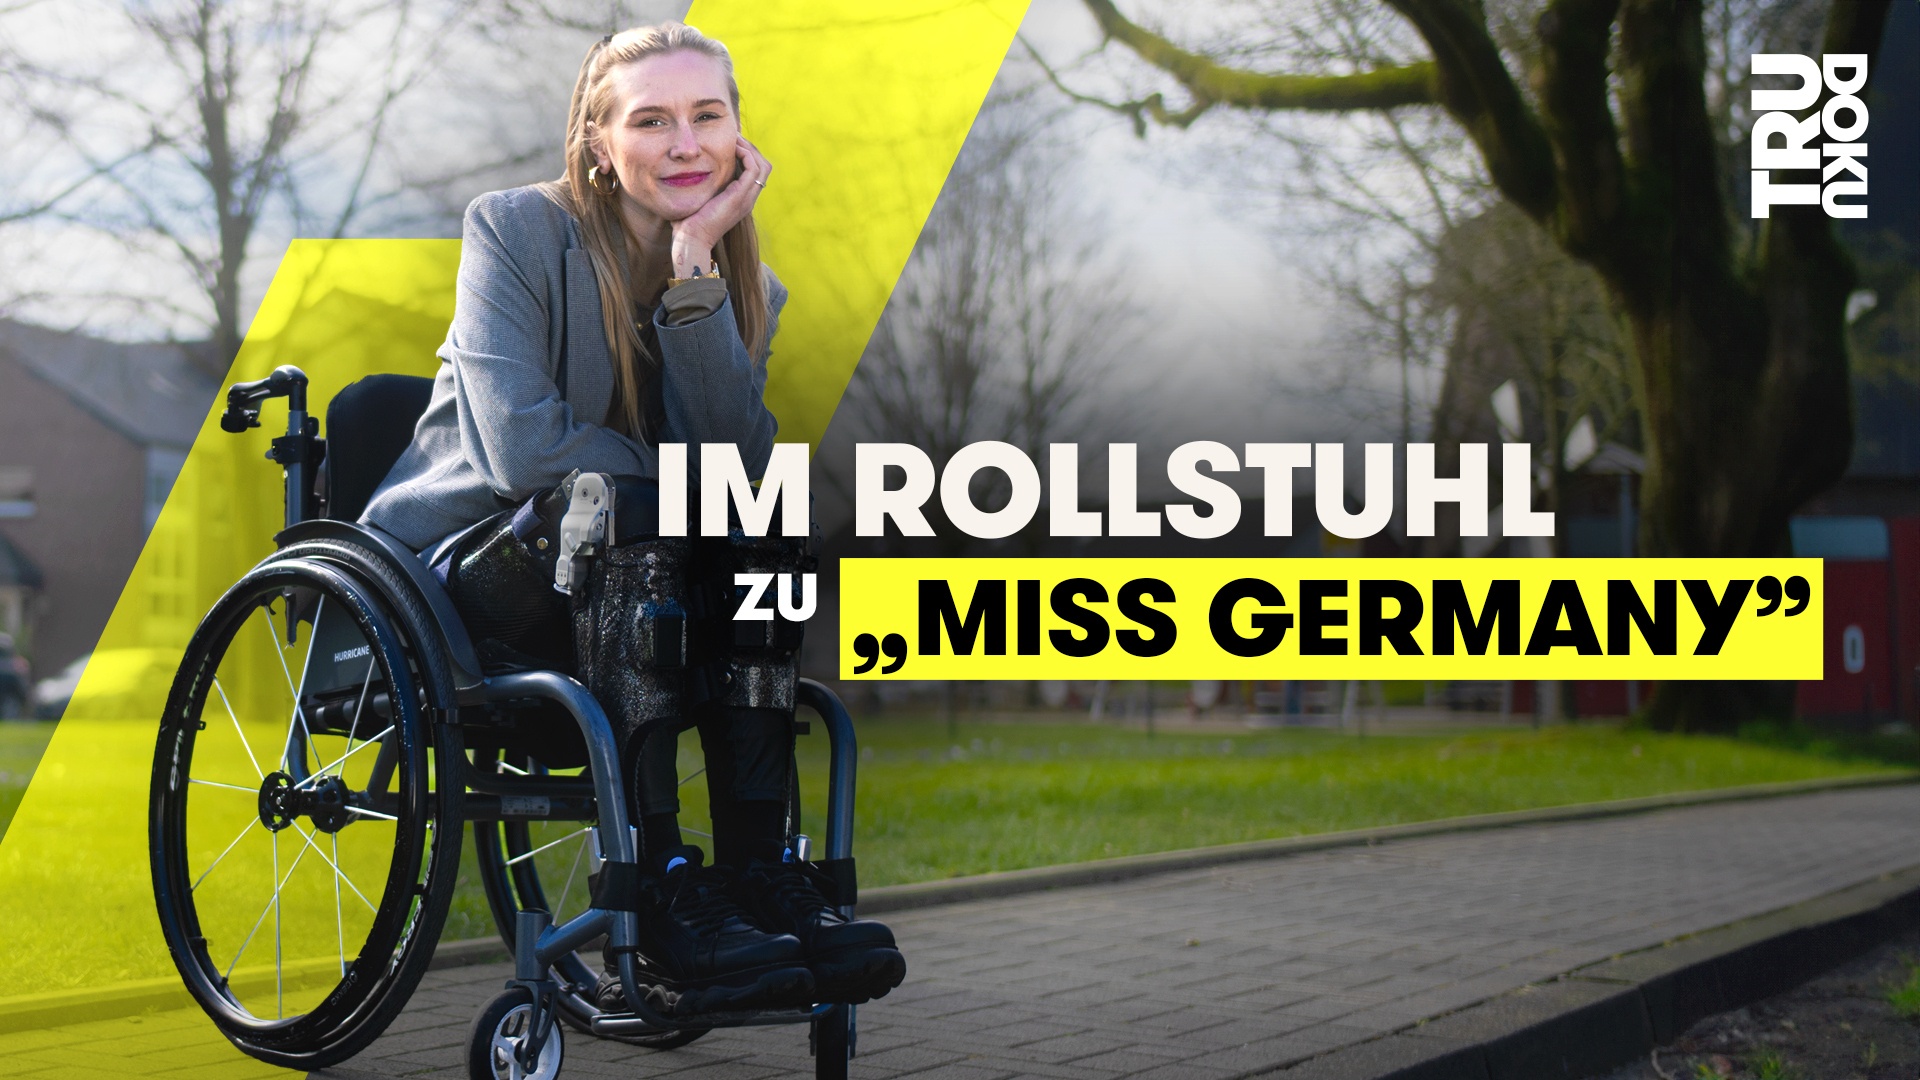 Vize Miss Germany Christina kämpft für Barrierefreiheit - TRU DOKU